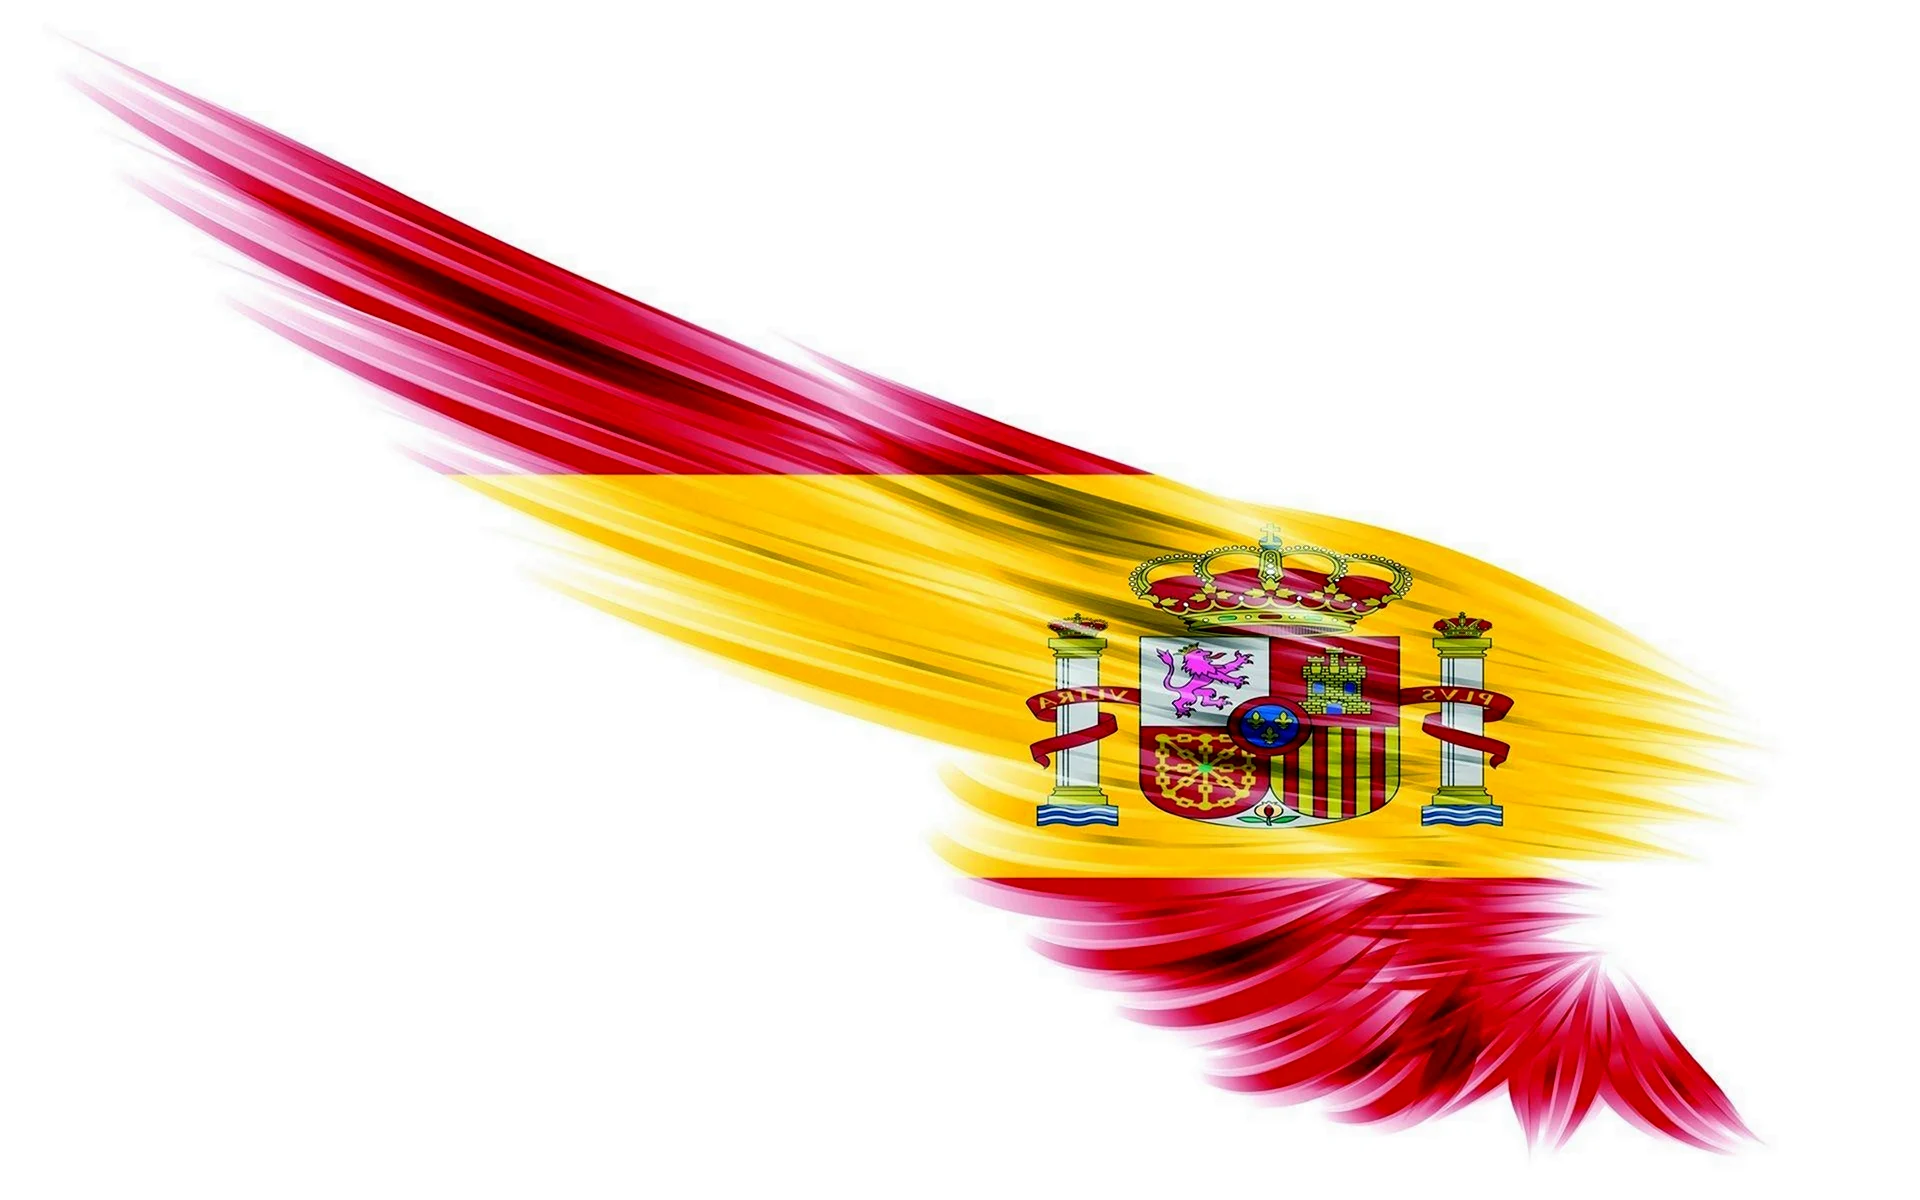 Флаг Испании